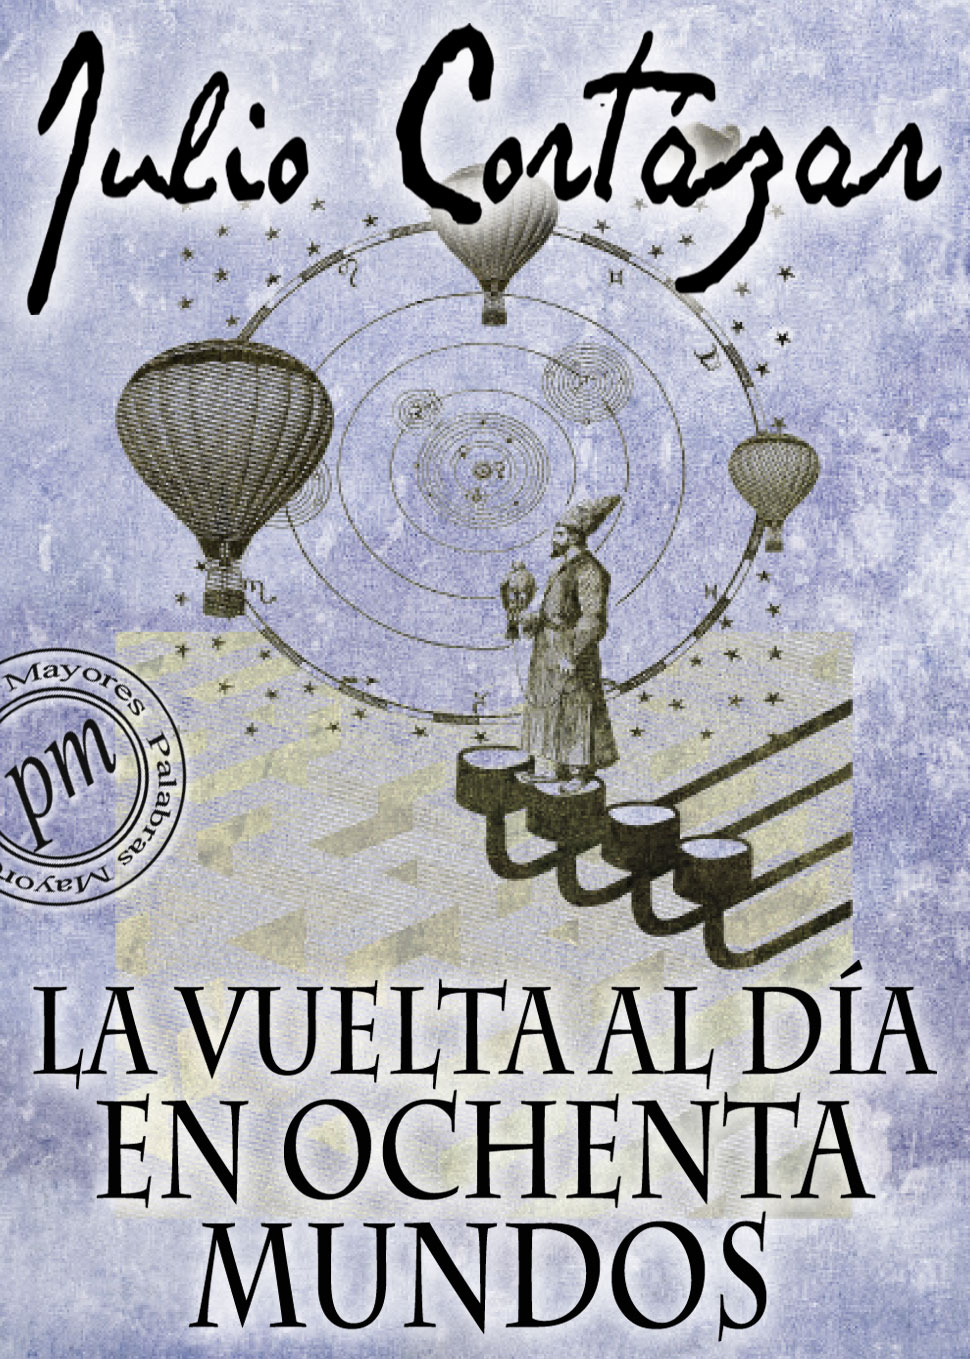 download descargar libro vuelta pedro urdemales pdf